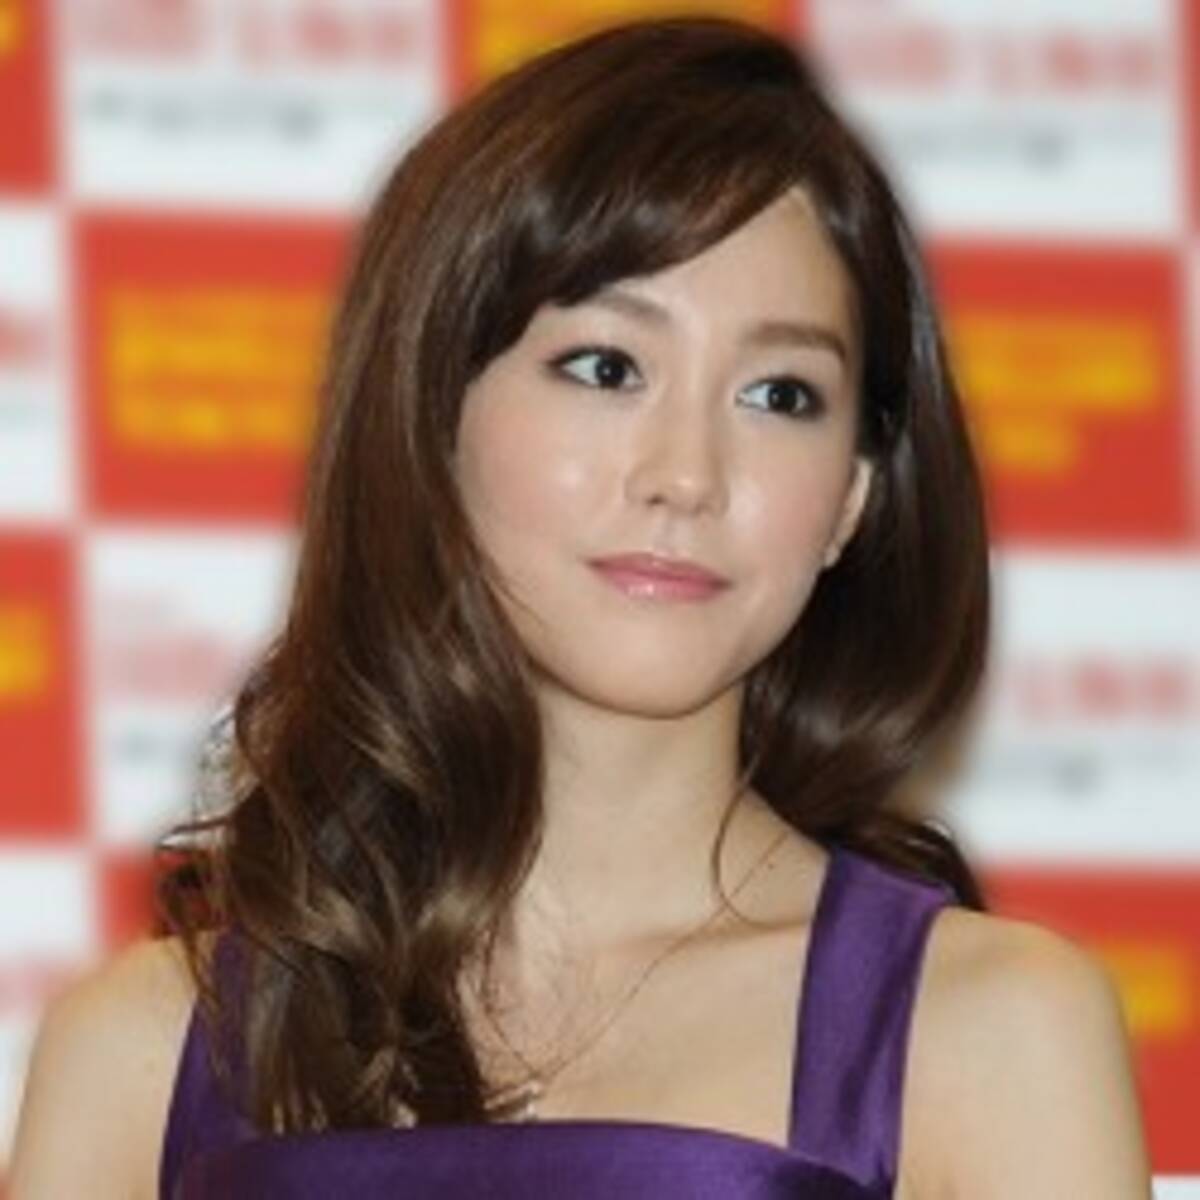 視聴者が困惑 桐谷美玲 まつ毛を盛っていないと のっぺり顔 だった 15年11月17日 エキサイトニュース